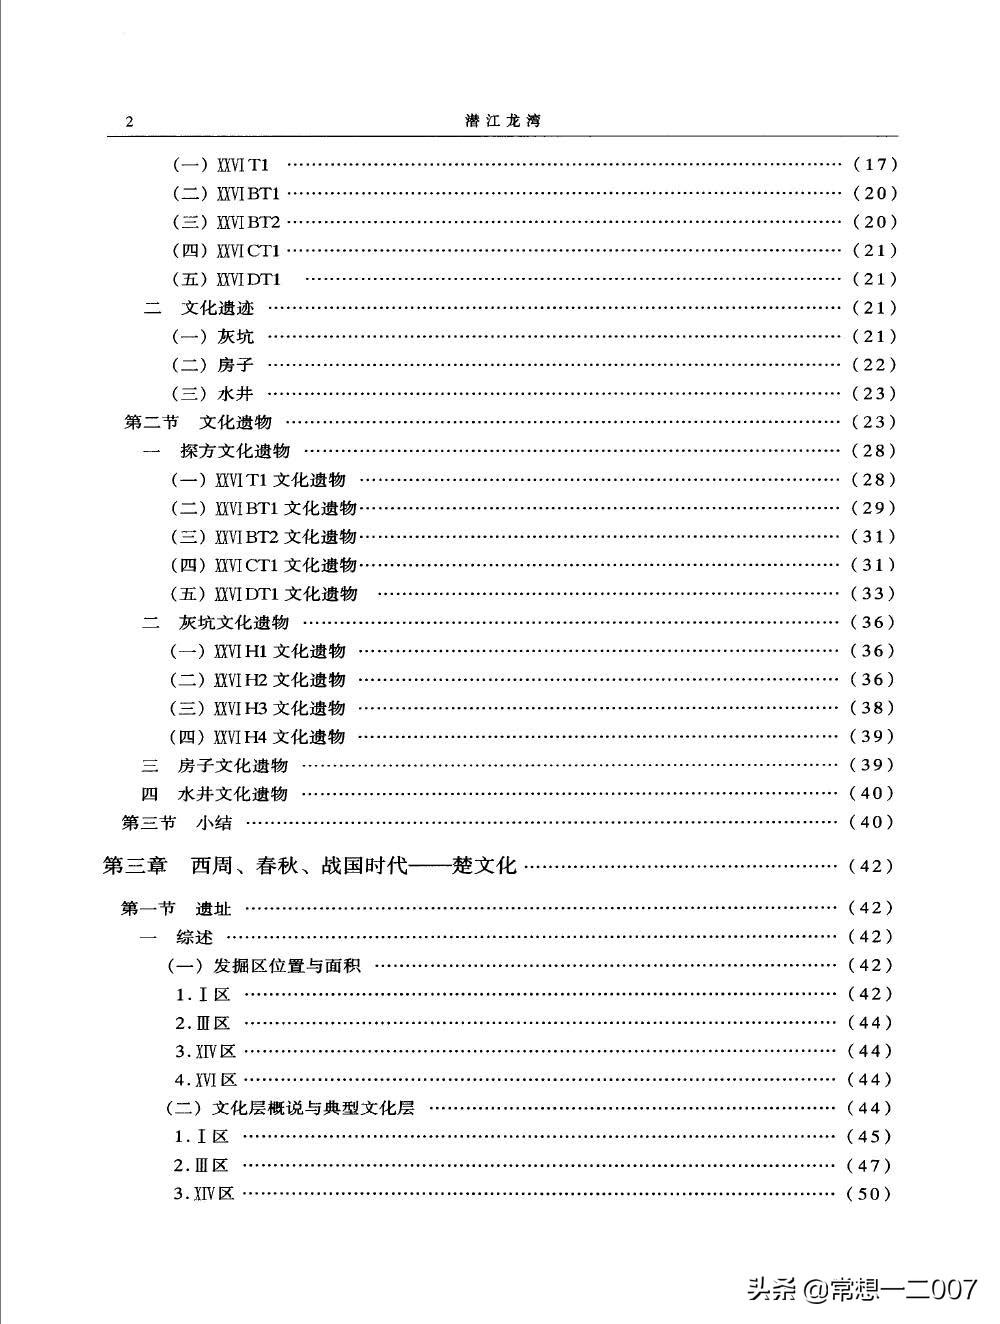 日享一书BGq01《潜江龙湾 1987-2001年龙湾遗址发掘报告 》